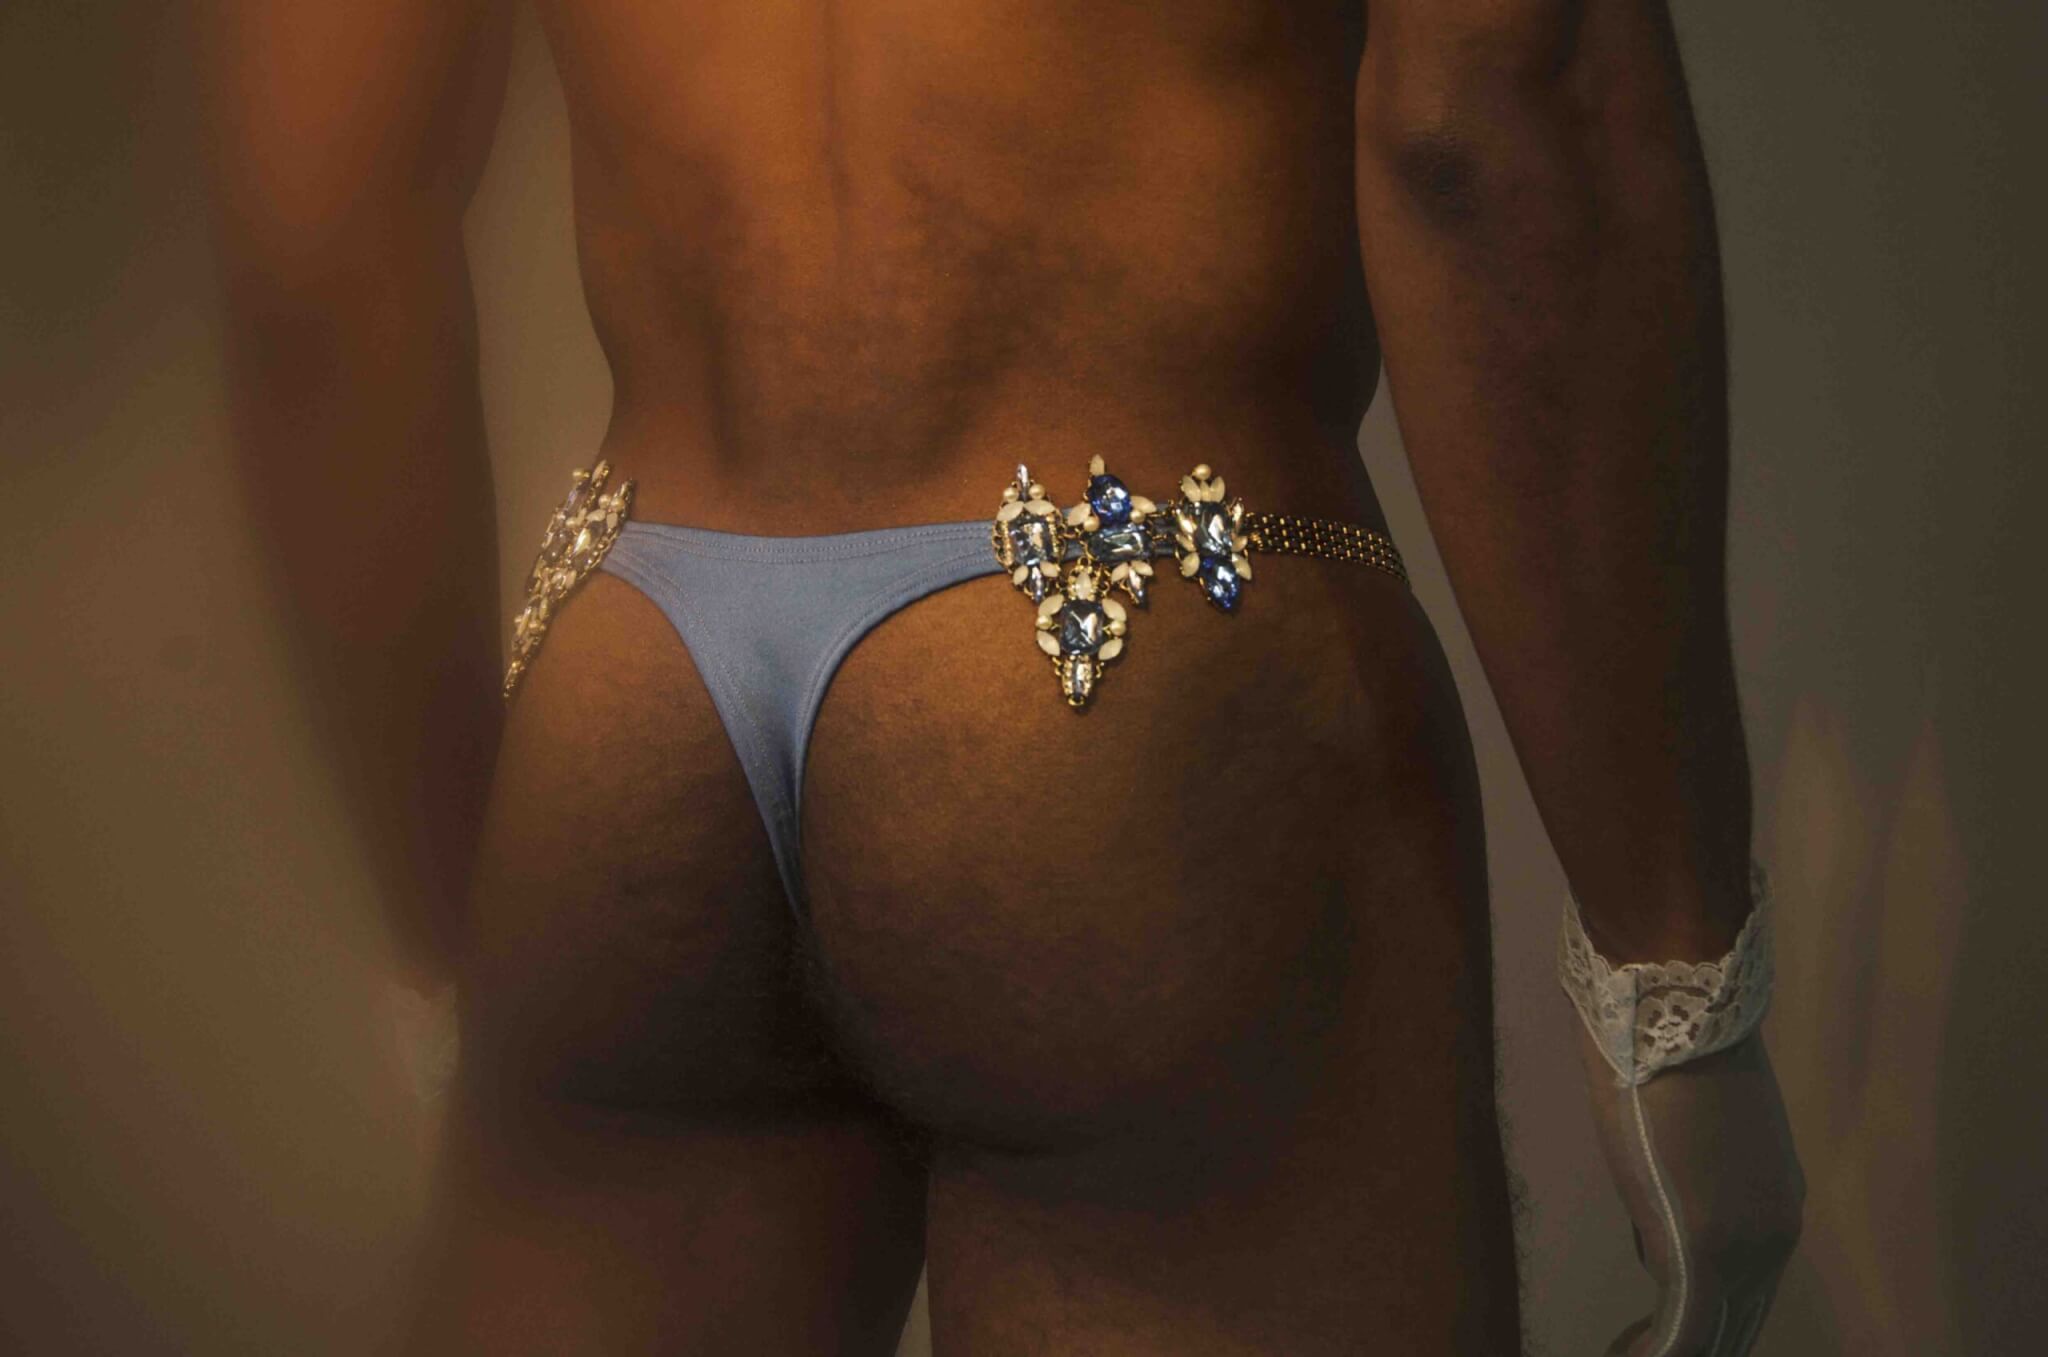 Proteo: intervista al designer che ha ideato il marchio di lingerie di lusso per uomini - PROTEO41 scaled - Gay.it